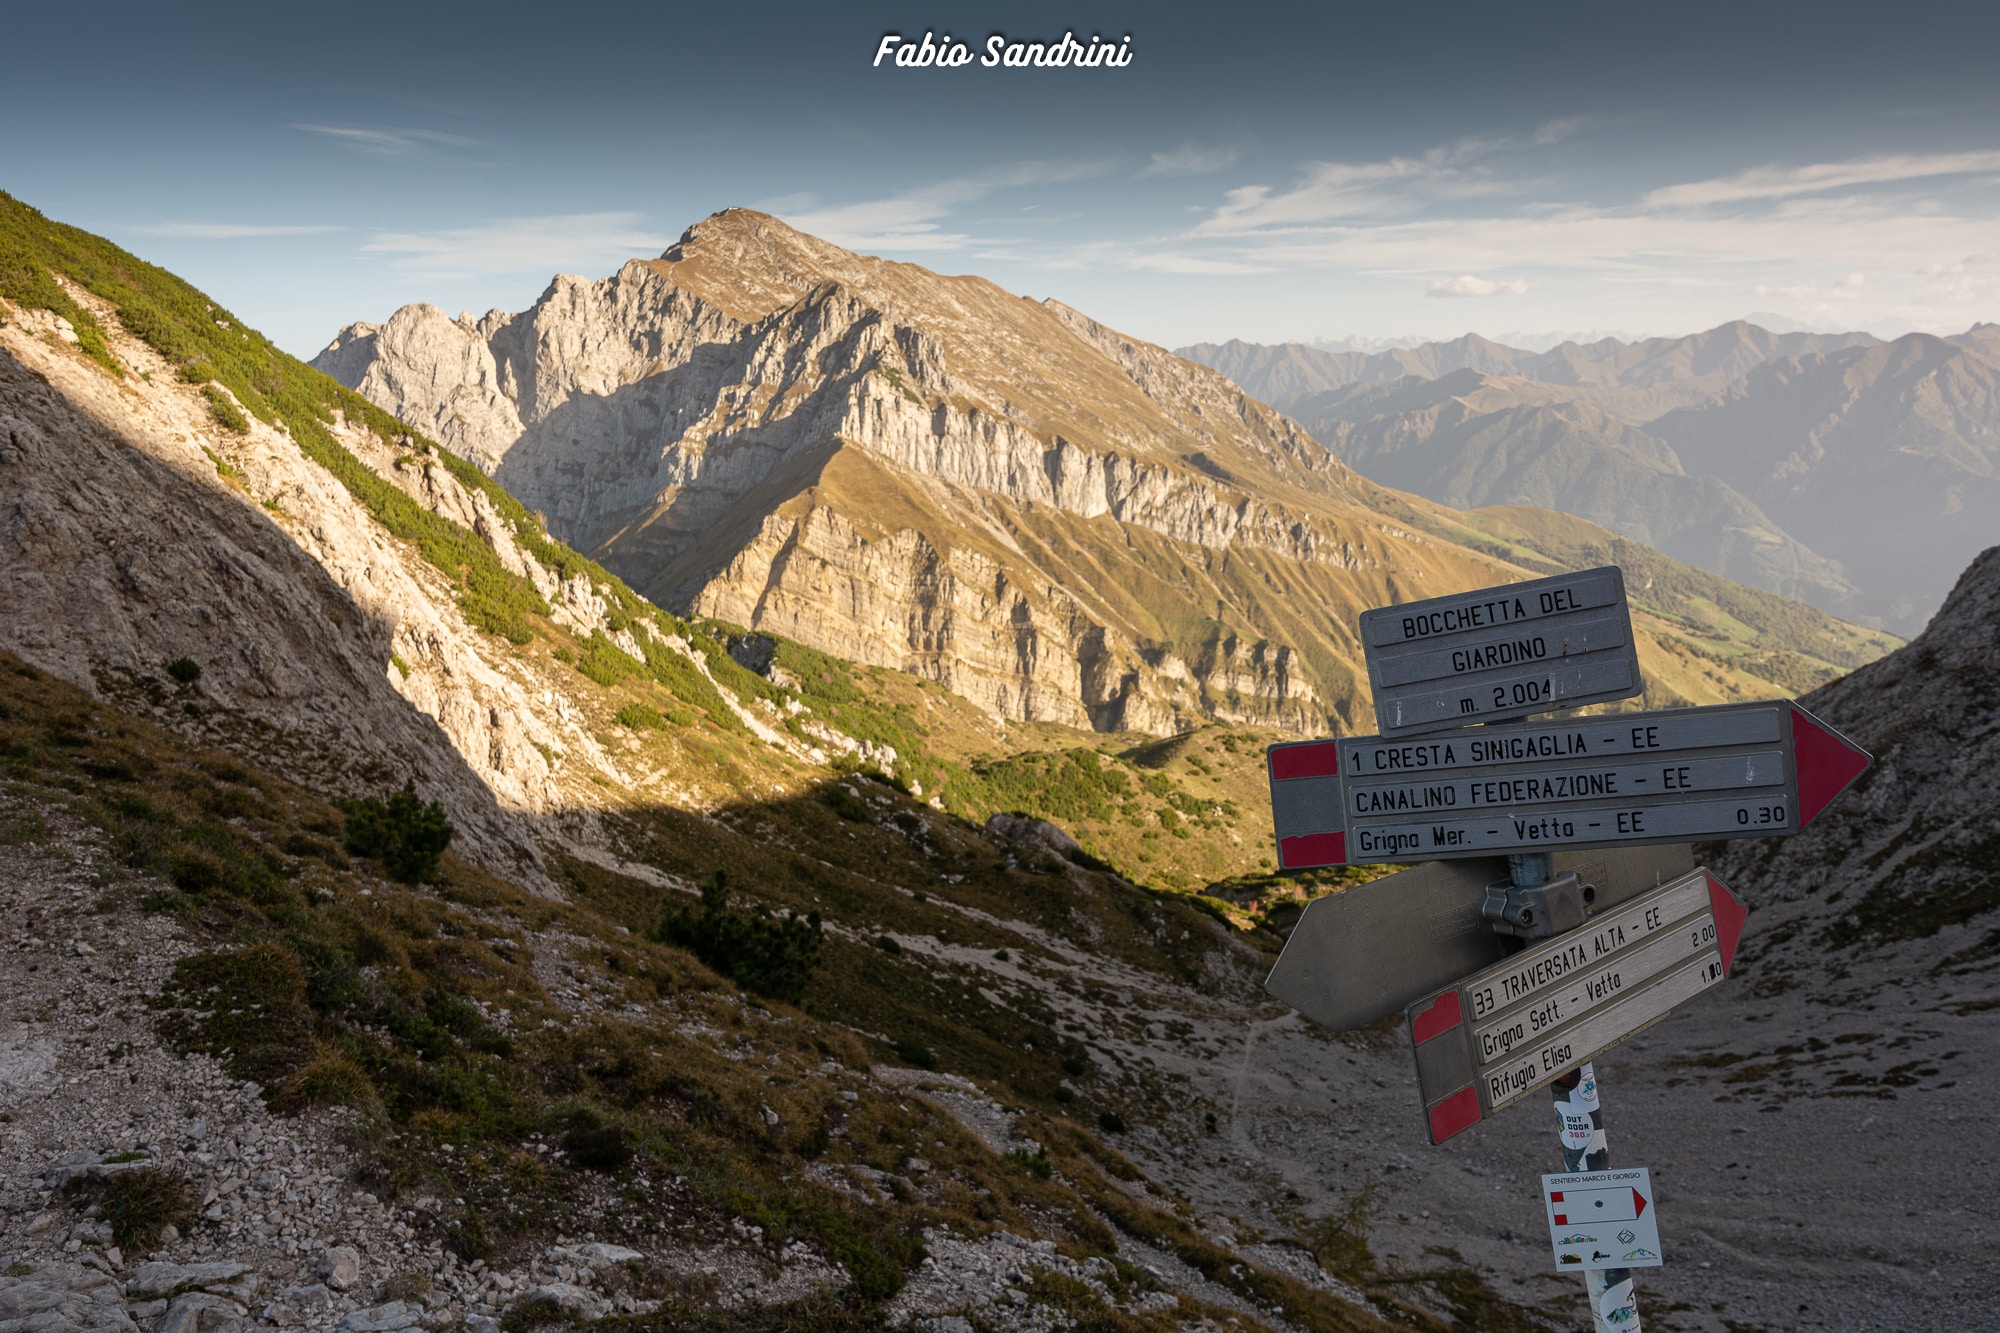 Traversata Alta e Bassa delle Grigne (2177mlsm – 2410mslm) – Alpinismo nel gruppo delle Grigne